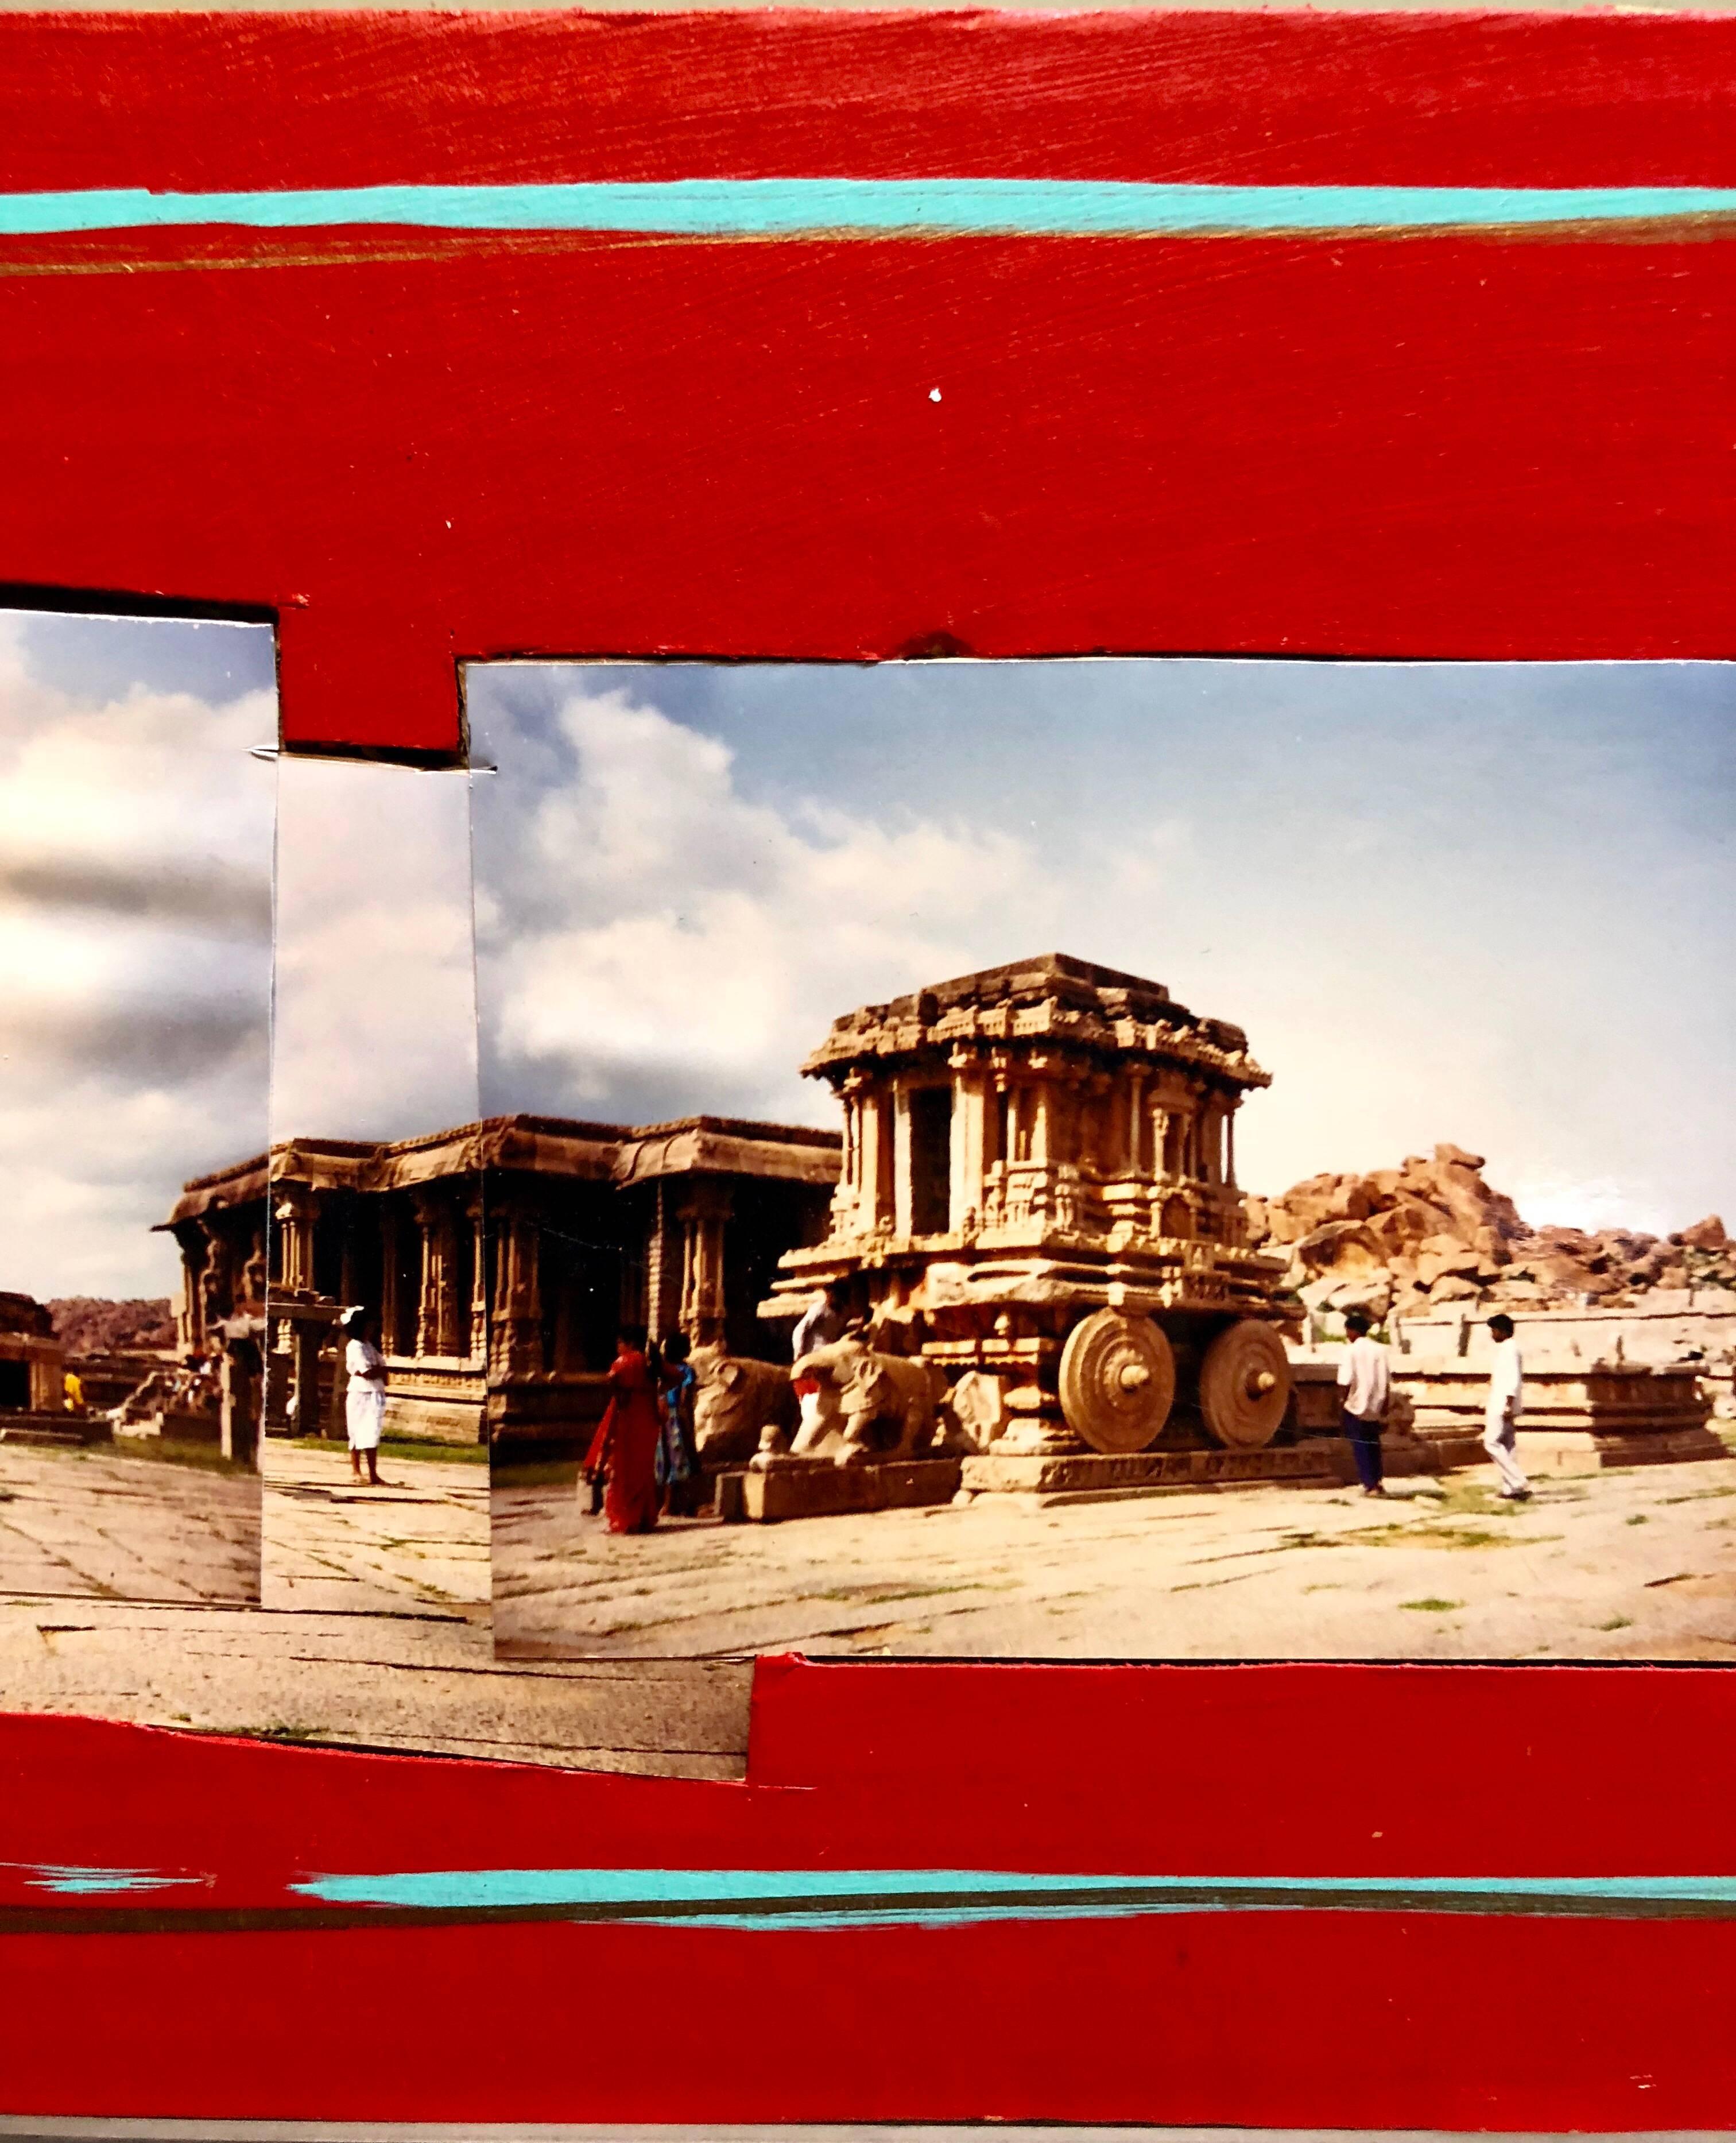 MacConnel, Kim Robert (Américain, Californien, né en 1946)
Touristes, Hampi, Inde (Hampi est un ancien village de l'État du Karnataka, dans le sud de l'Inde. Elle est parsemée de nombreux complexes de temples en ruine datant de l'empire